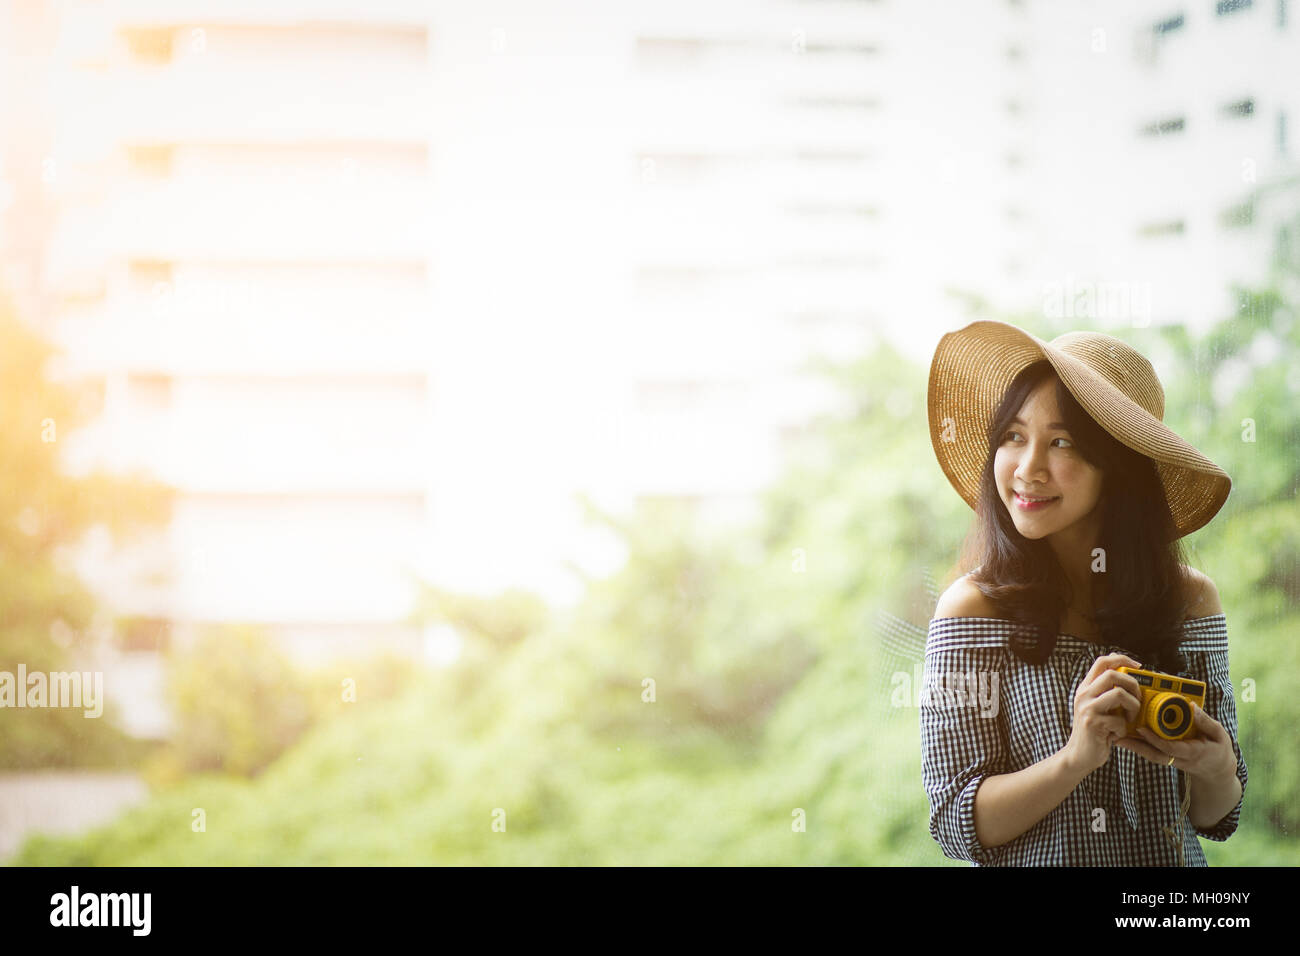 Ritratto di donna asiatica che indossa un cappello di paglia e guardando la luce del sole sulla sinistra. Fotografia di viaggiatori hipster lifestyle tenere la fotocamera in roo Foto Stock